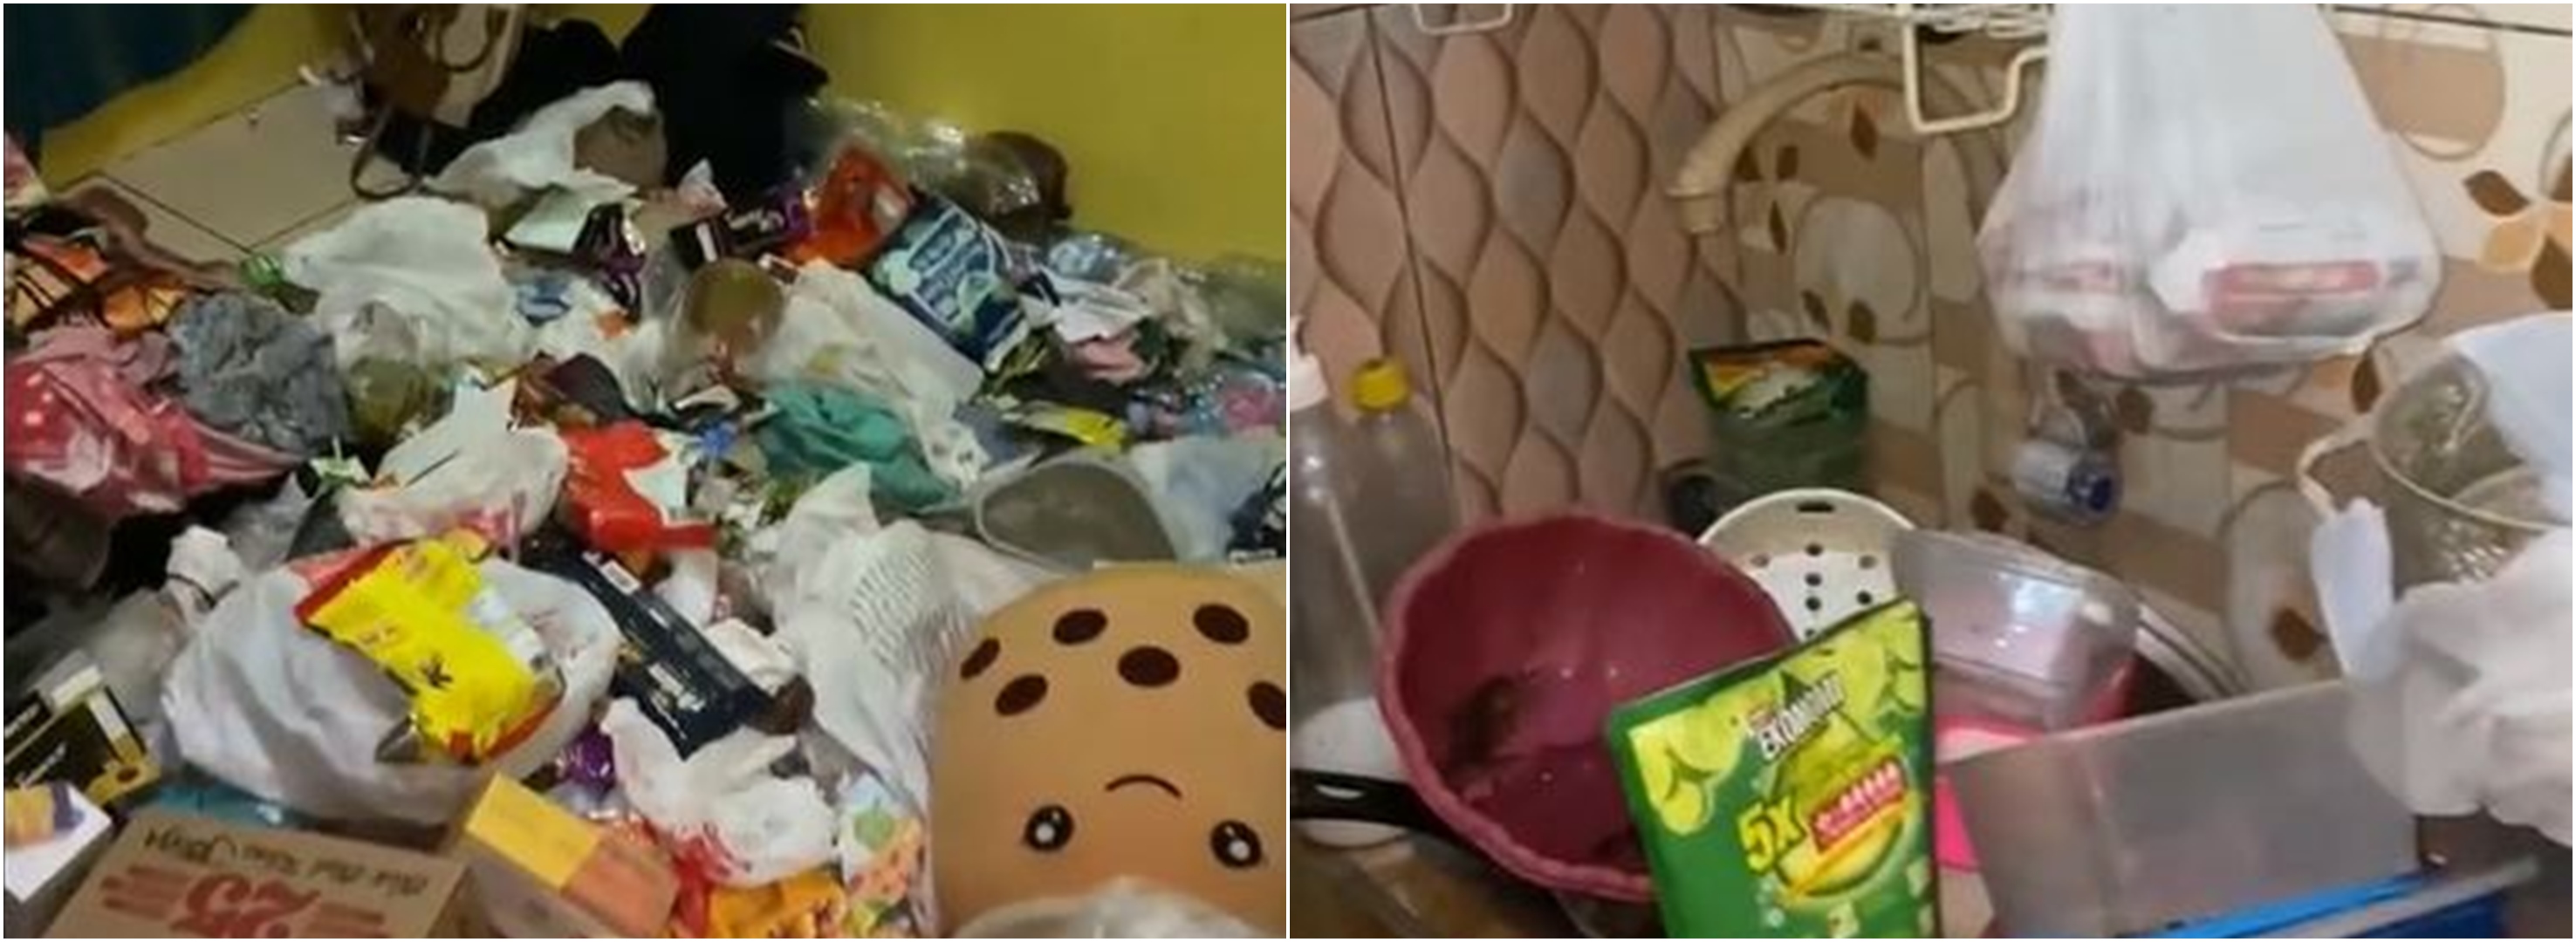 Penampakan kamar kost penuh sampah dan bau busuk, alasannya nyesek 